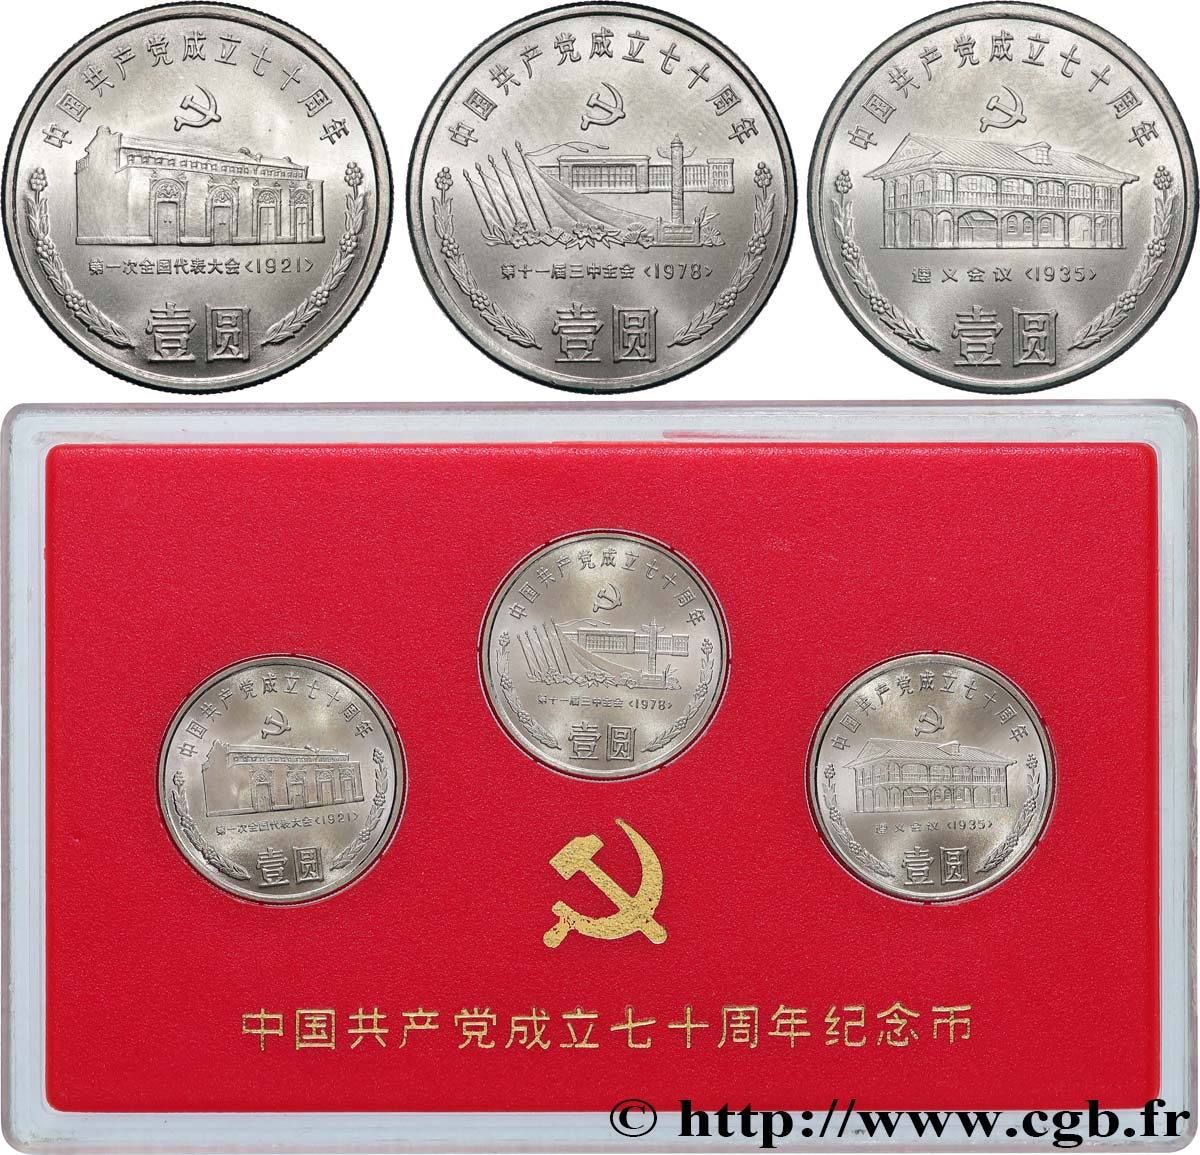 CHINA - PEOPLE S REPUBLIC OF CHINA Coffret trois monnaies 70e anniversaire du Parti communiste chinois 1991  MS 